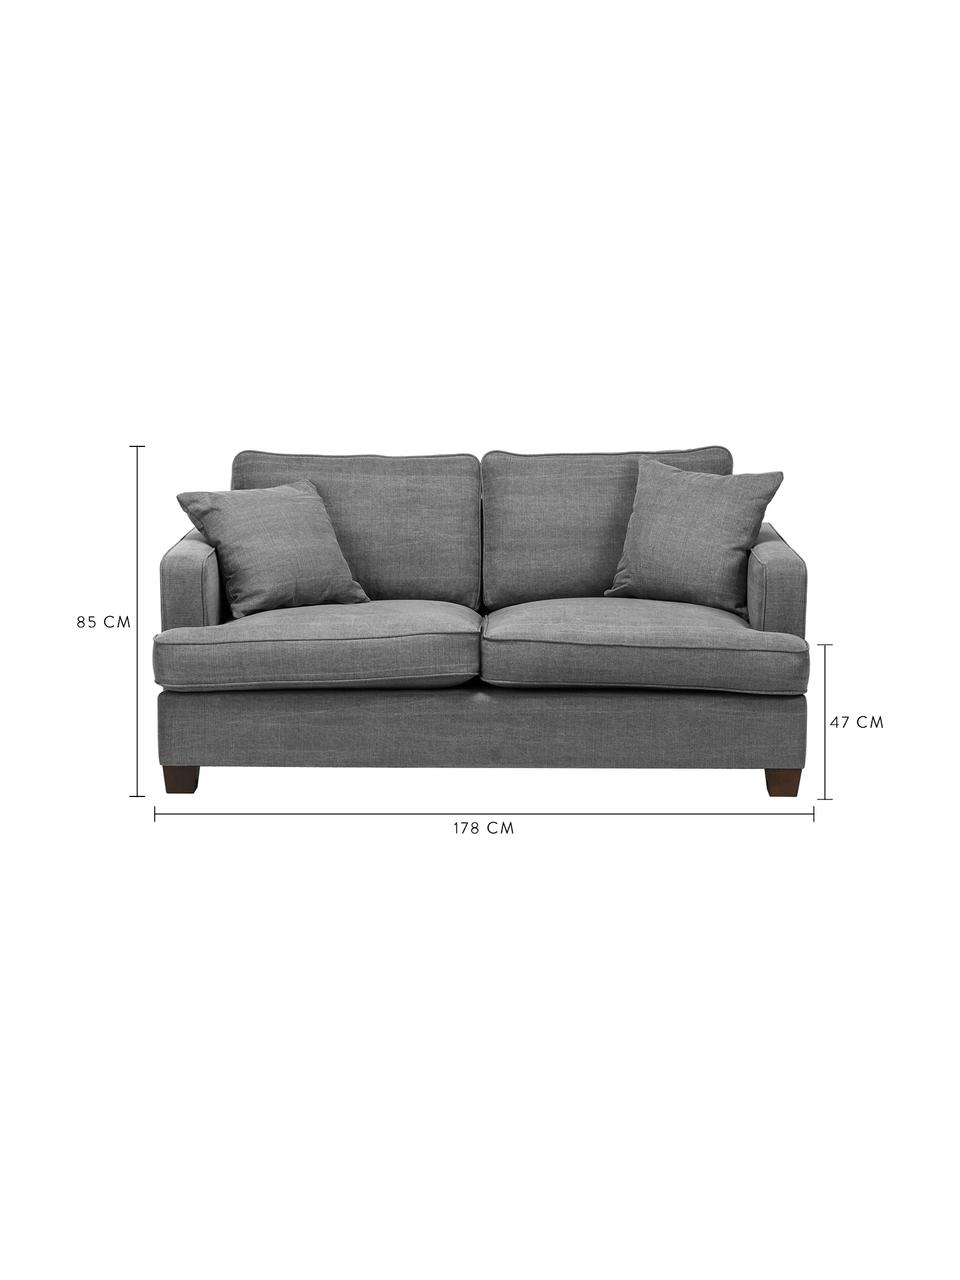 Duża sofa Warren (2-osobowa), Tapicerka: 60% bawełna, 40% len Tkan, Nogi: czarne drewno, Szary, S 178 x W 85 cm